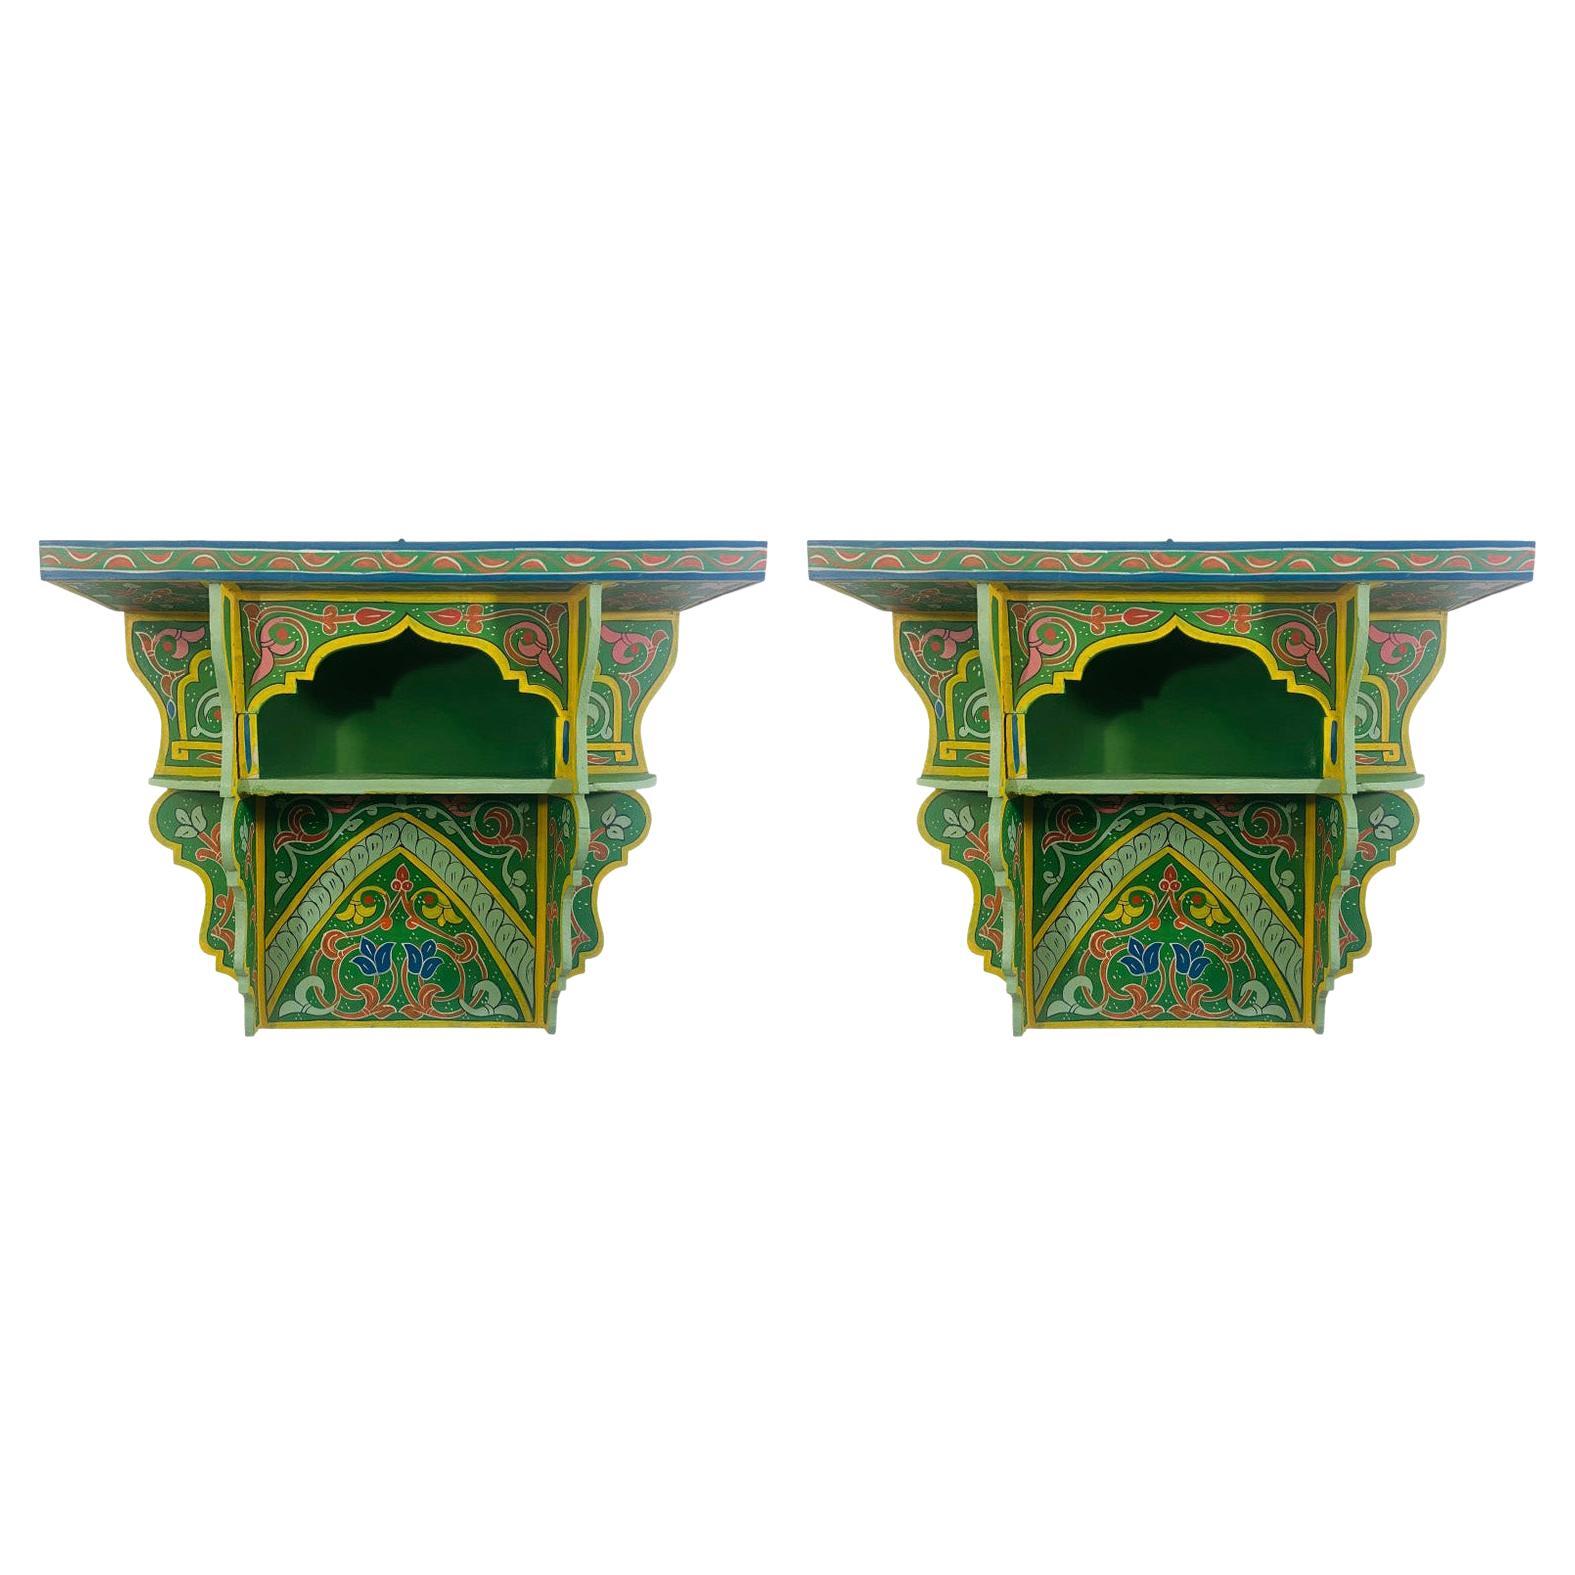 Marokkanisches grünes Boho-Chic-Spitzenregal oder -Regal in Grün, ein Paar